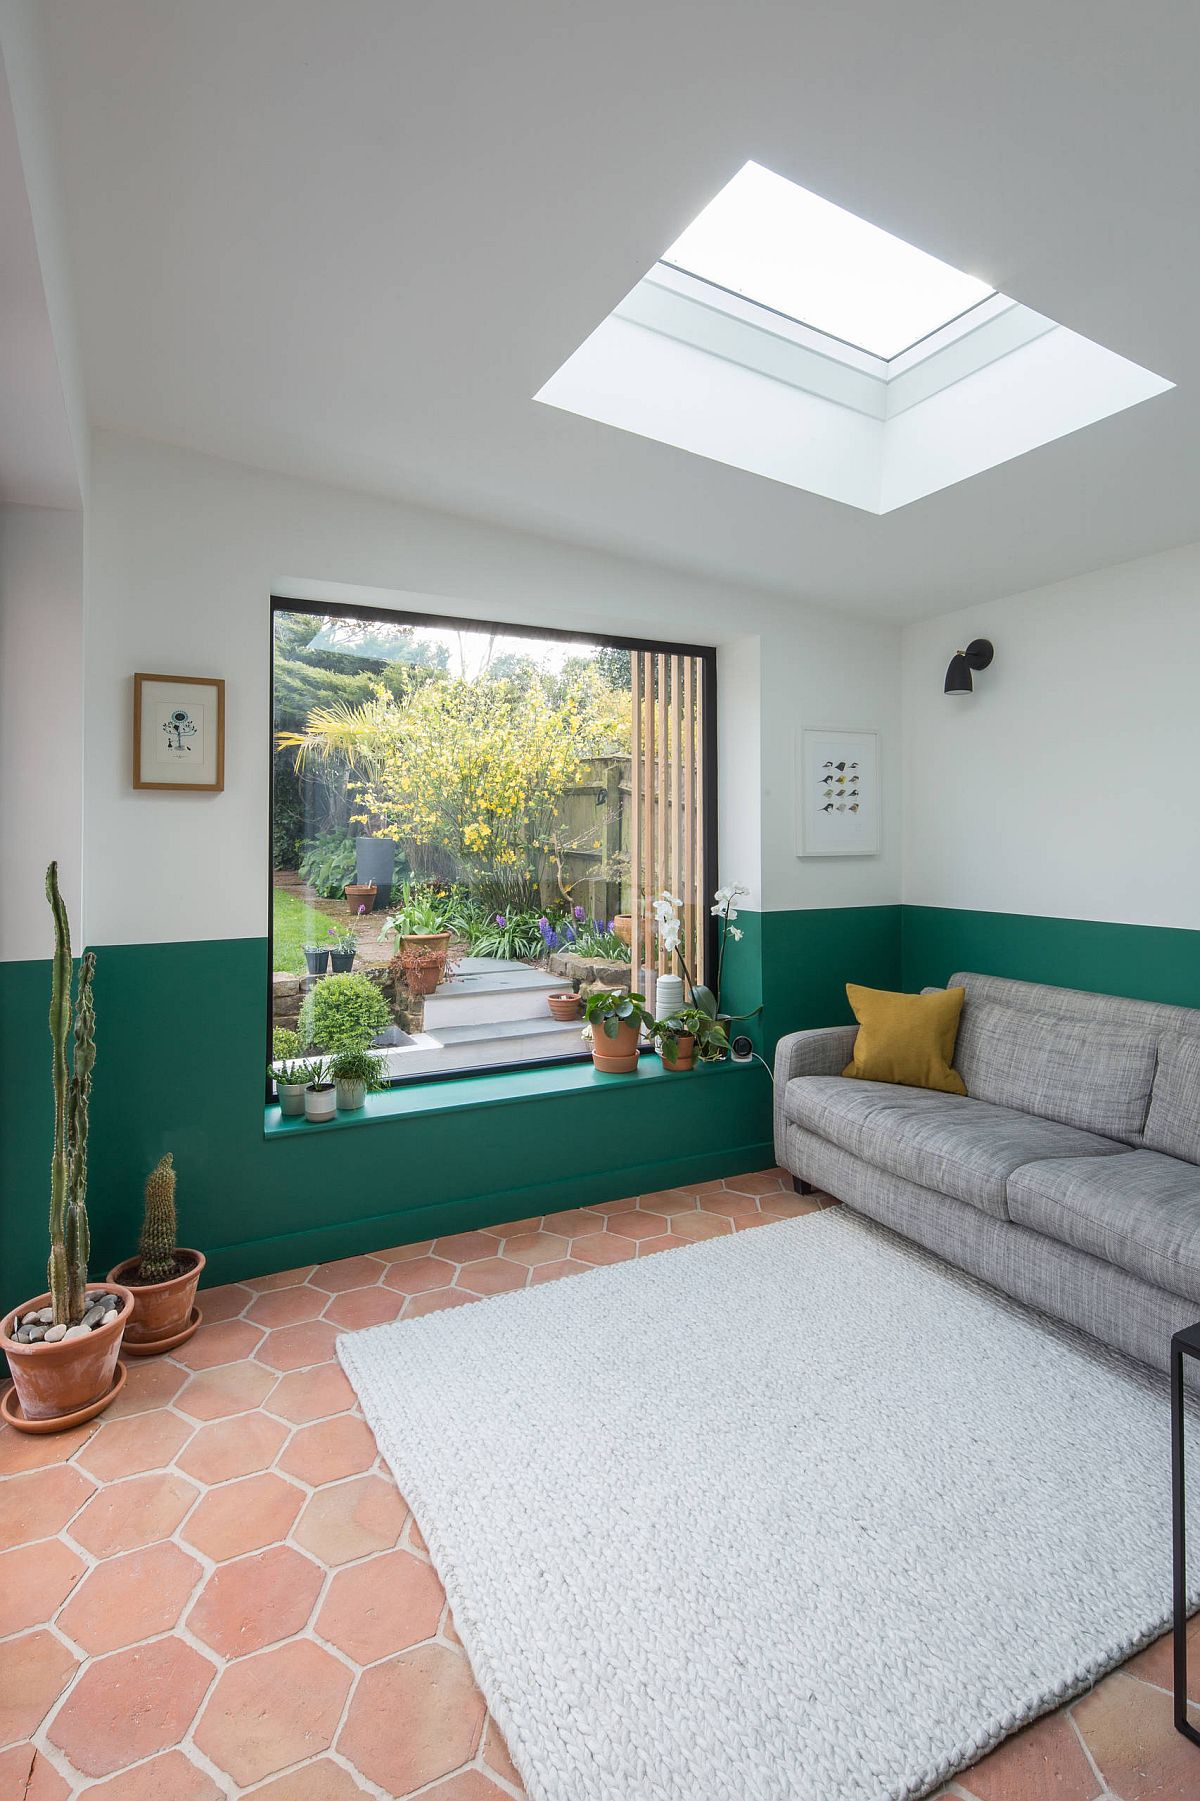 Hình ảnh phòng khách đơn giản với sofa xám, sàn gạch nung, tường sơn màu xanh lá